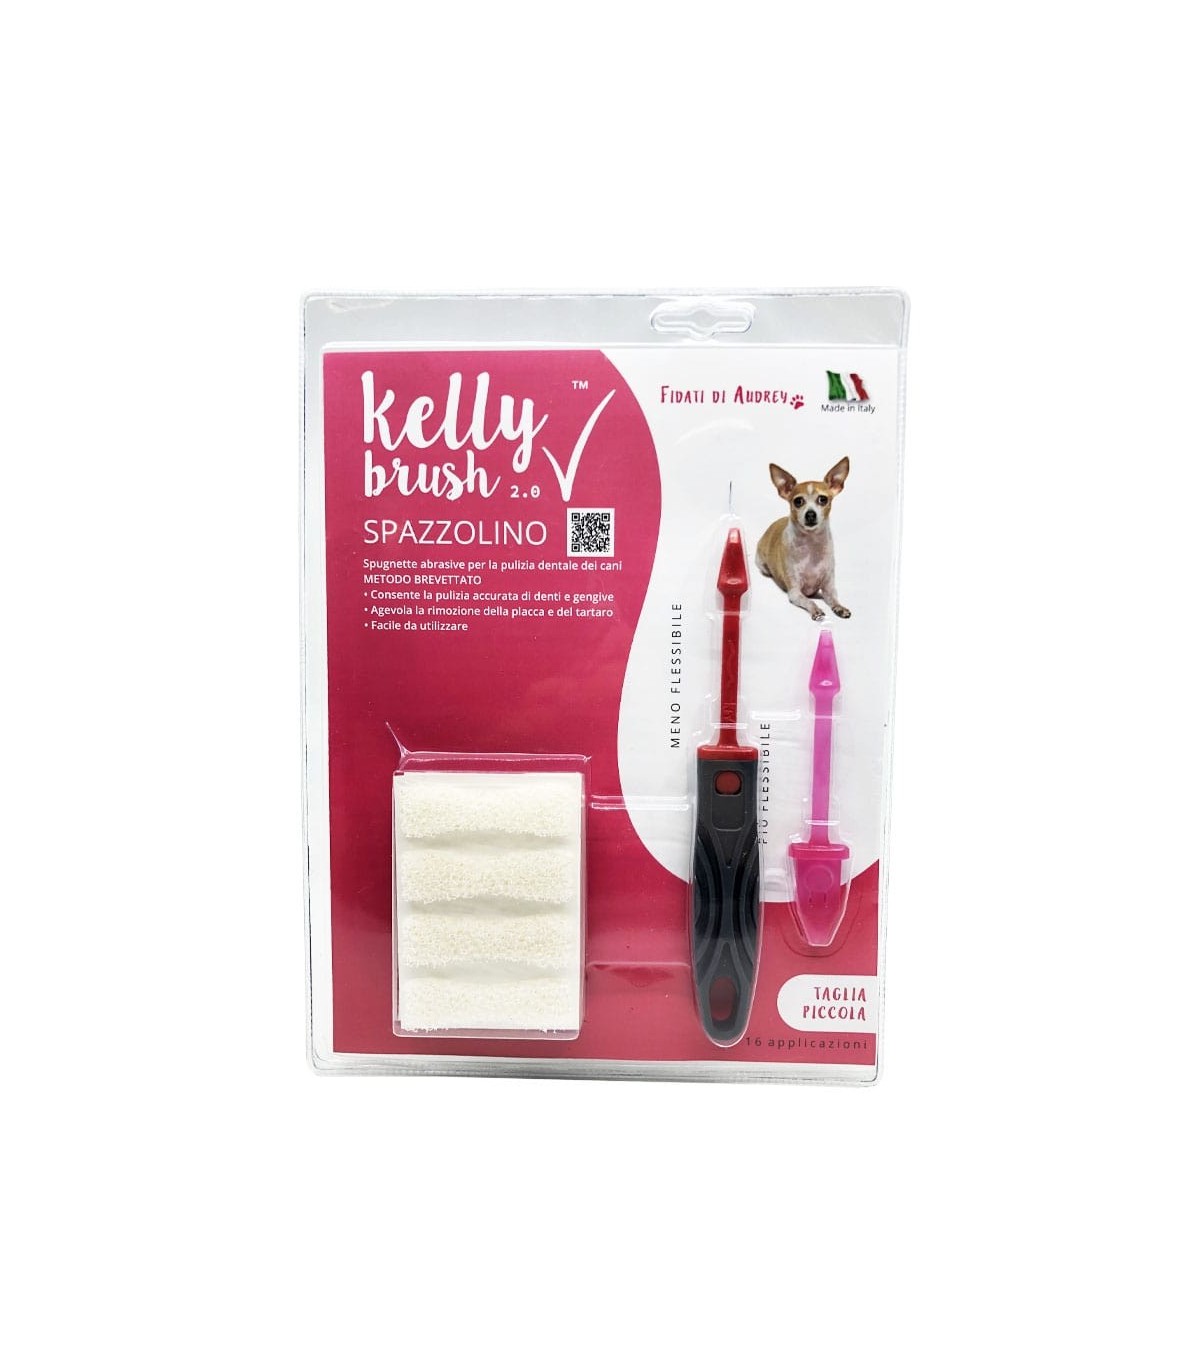 Kelly Brush kit spazzolino taglia piccola 16 applicazioni